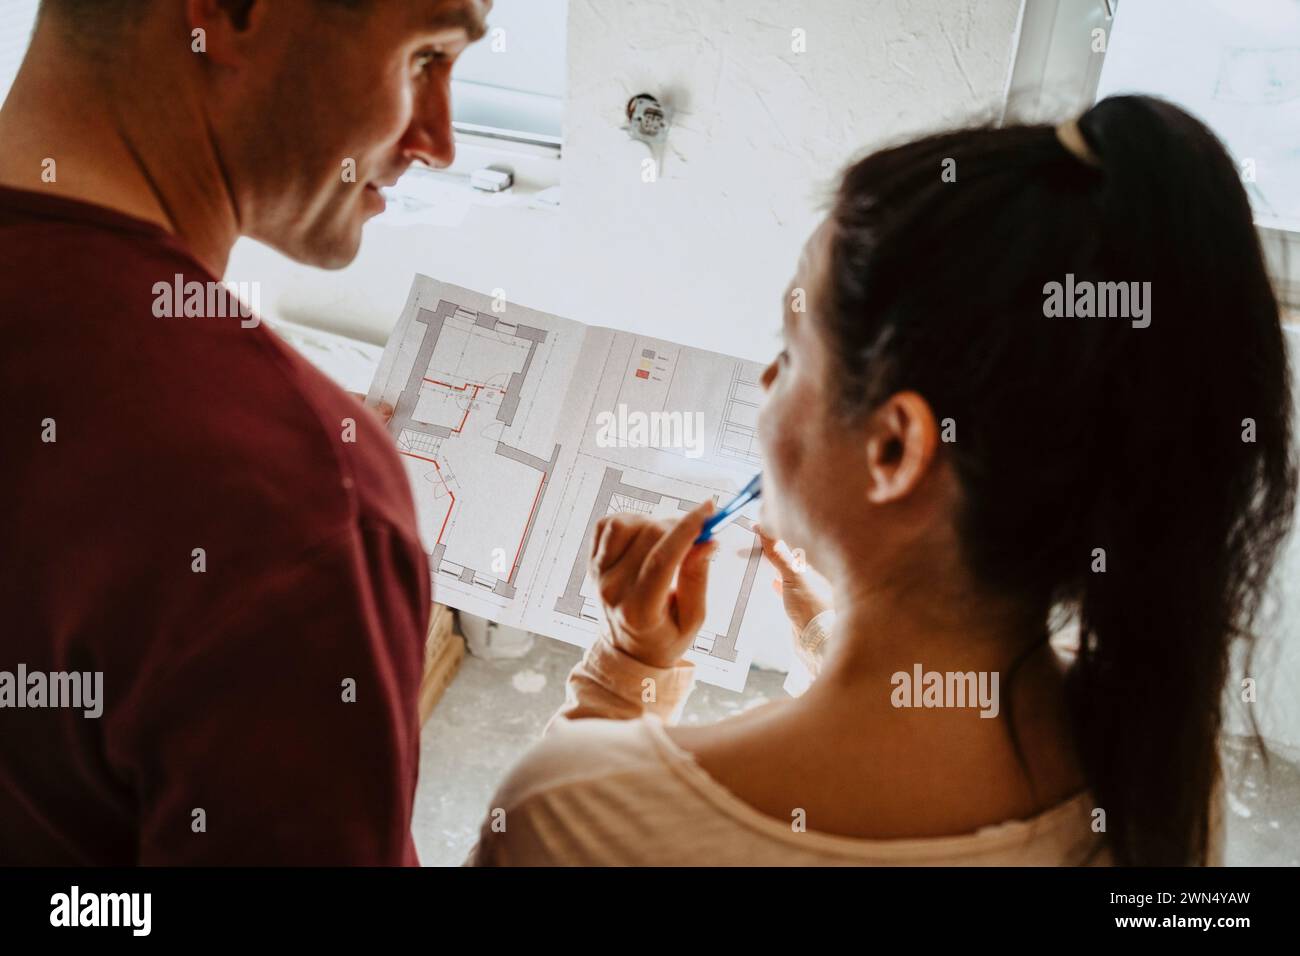 Vue en angle élevé du couple discutant sur le plan tout en rénovant la maison Banque D'Images